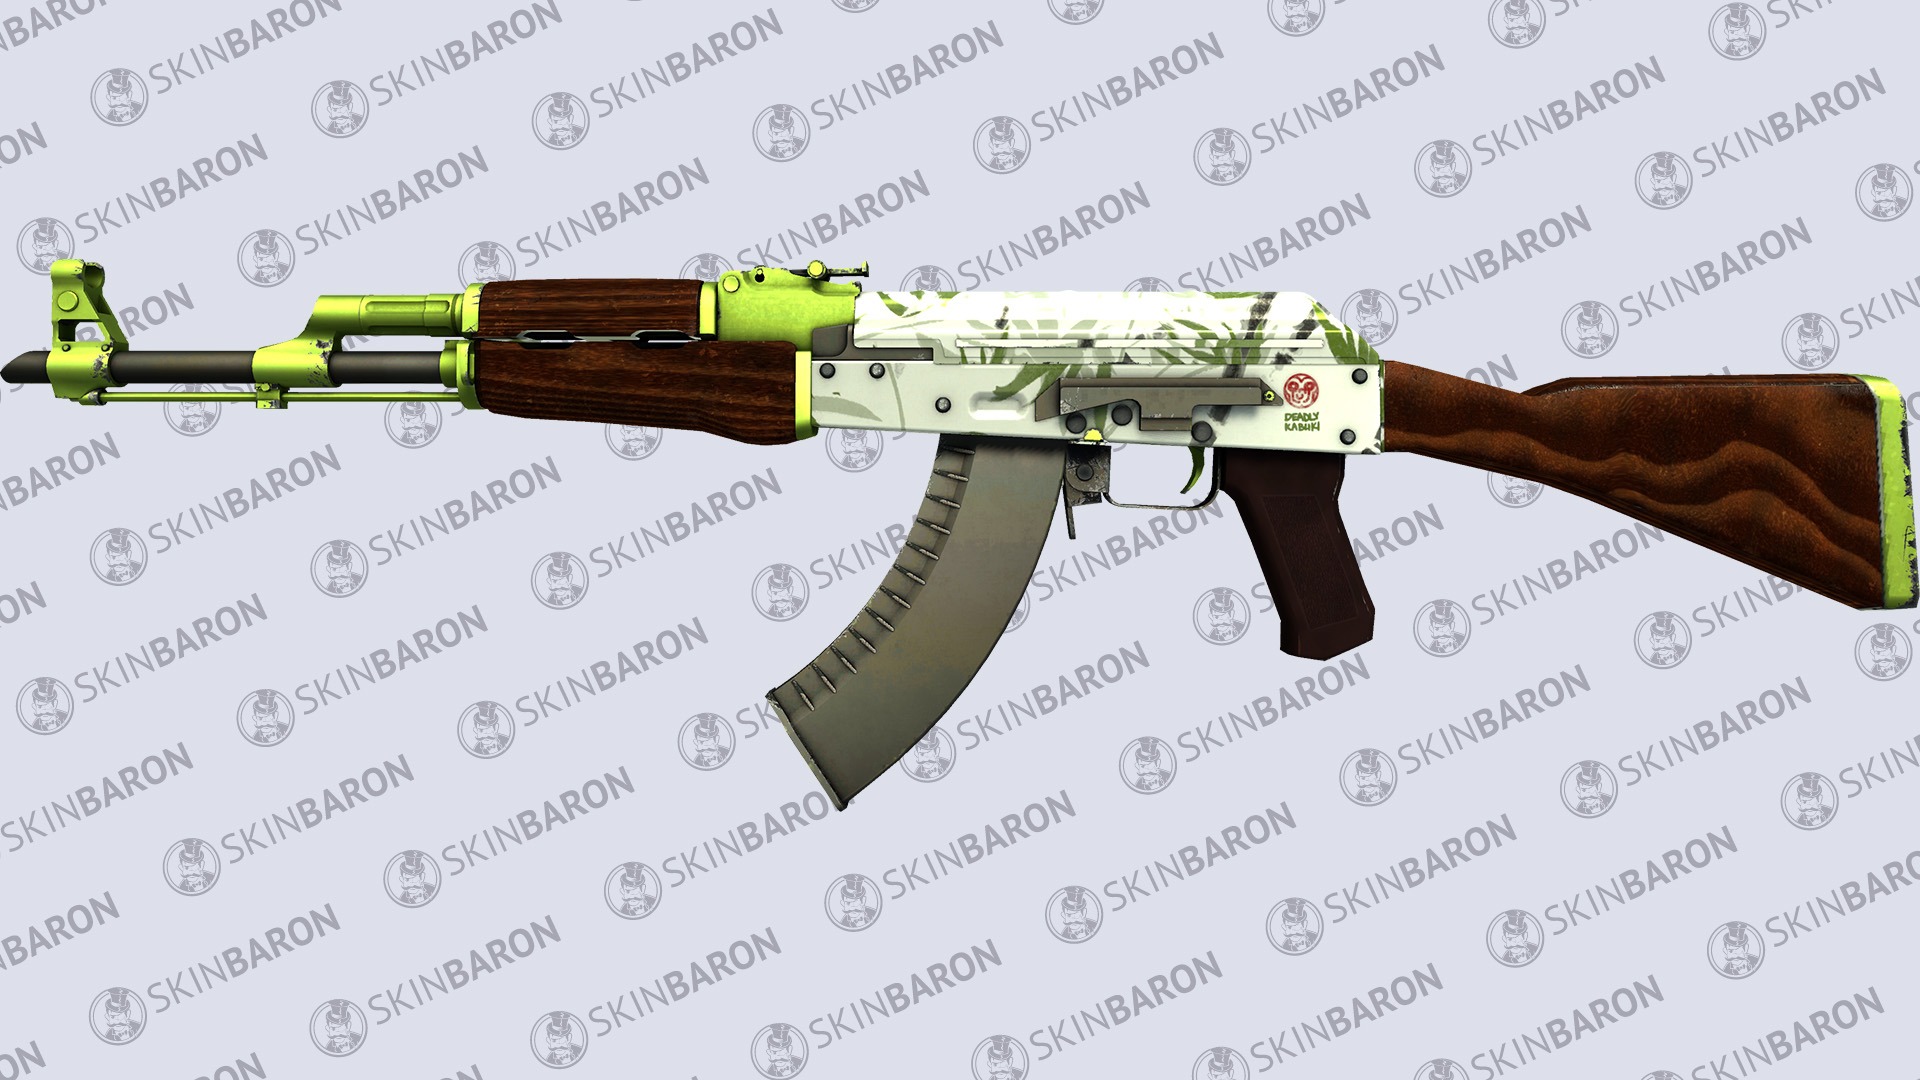 AK-47 Hydroponic - Most Expensive AK-47 skins